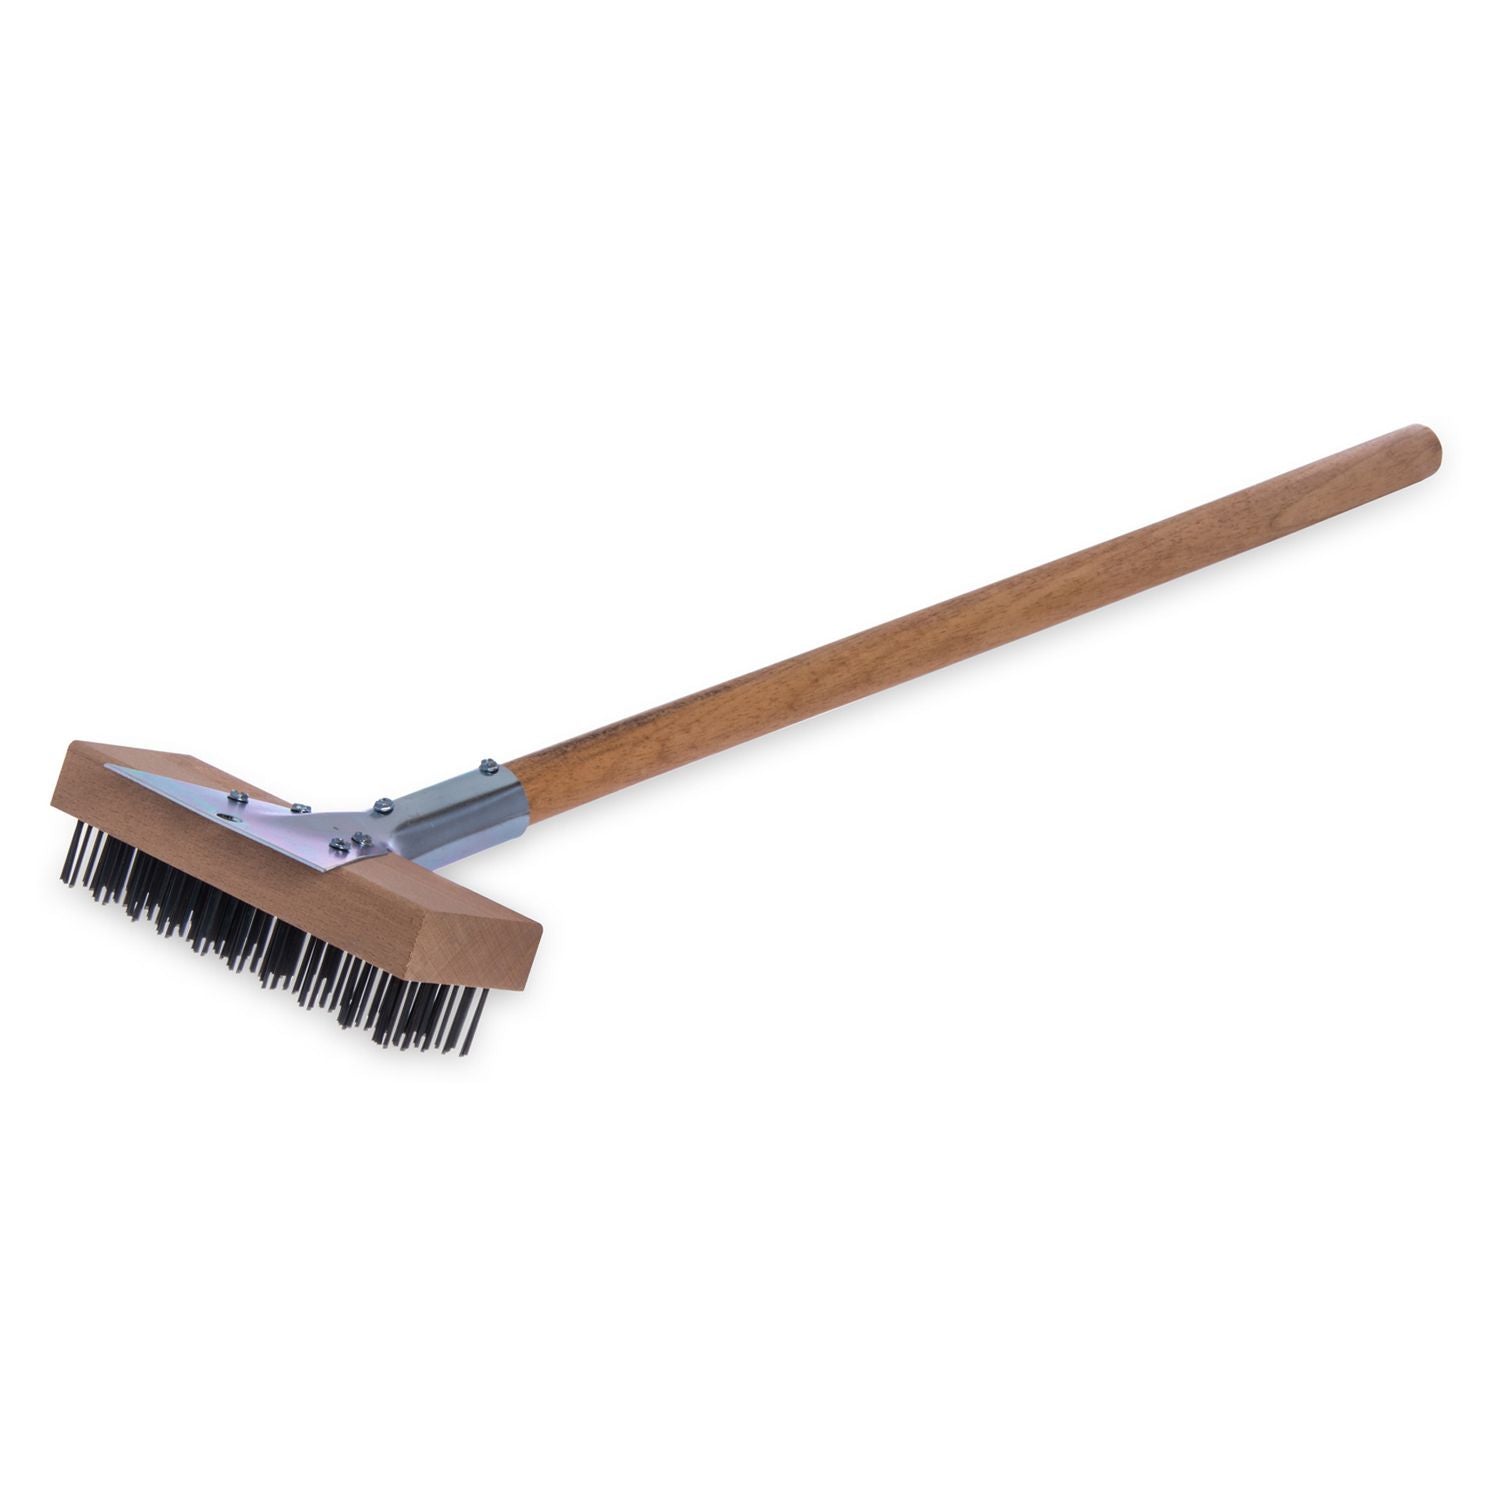 sparta-broiler-master-grill-brush-and-scraper-with-handle-metal-bristles-30-natural-wood-handle_cfs36372500 - 1